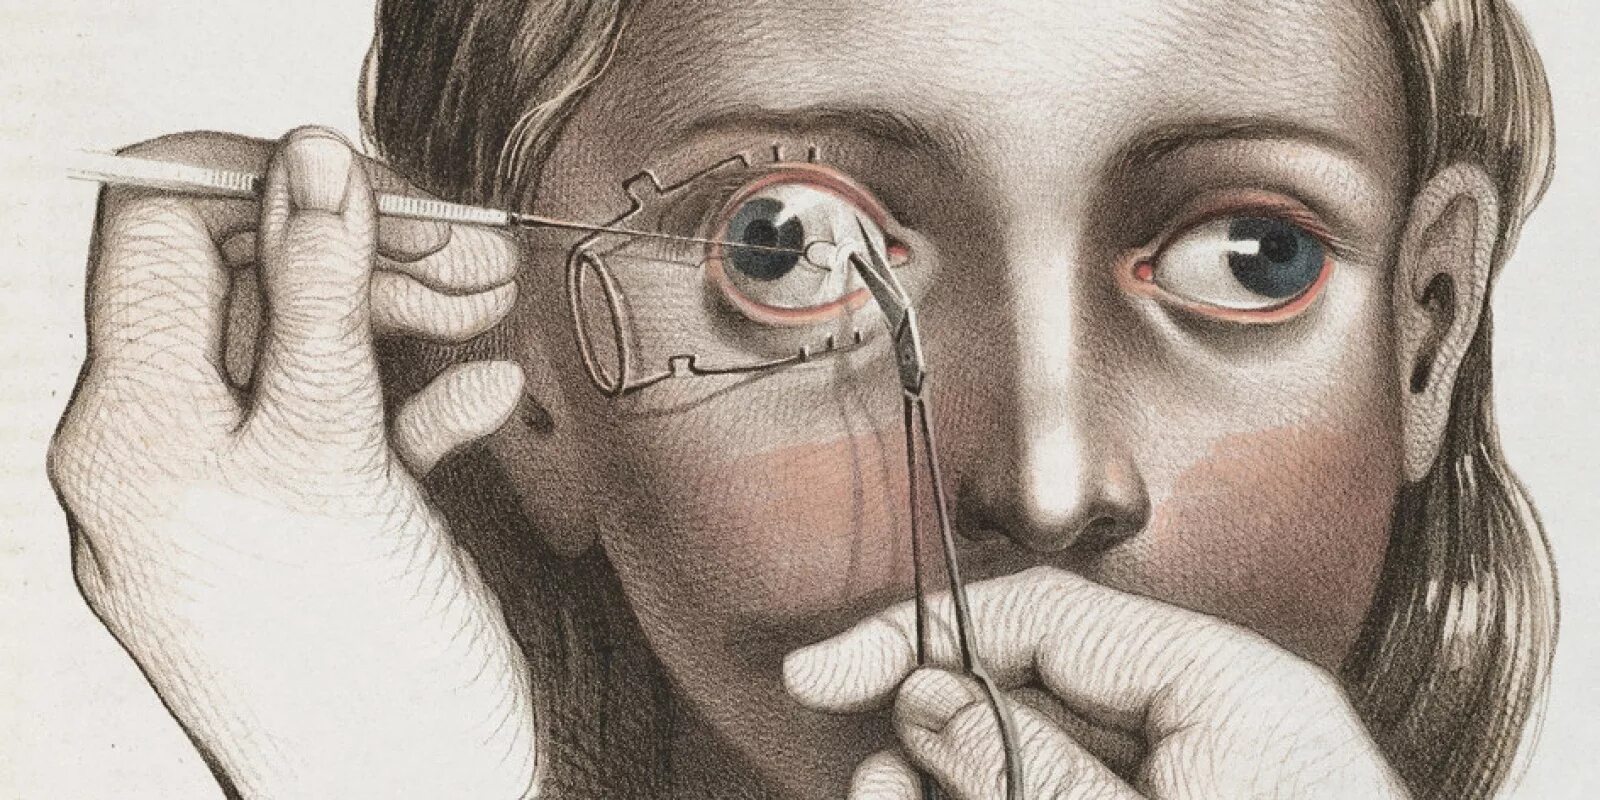 Операции на глазах в древности. Хирургия глаз в средние века. Офтальмология в искусстве. Глазная хирургия в средние века-. Неприятный век